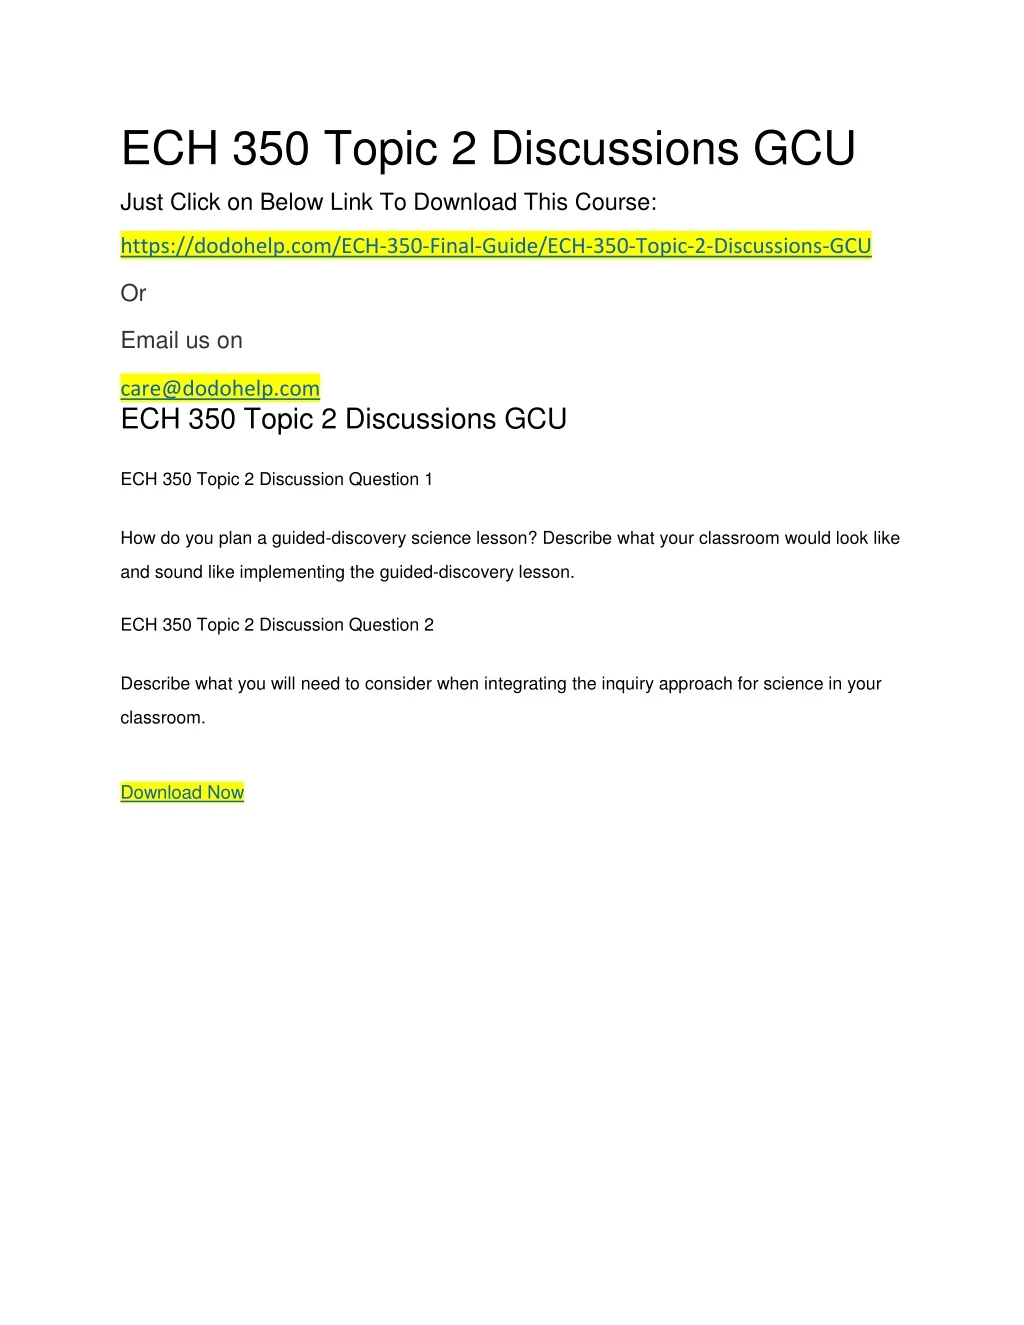 ech 350 topic 2 discussions gcu